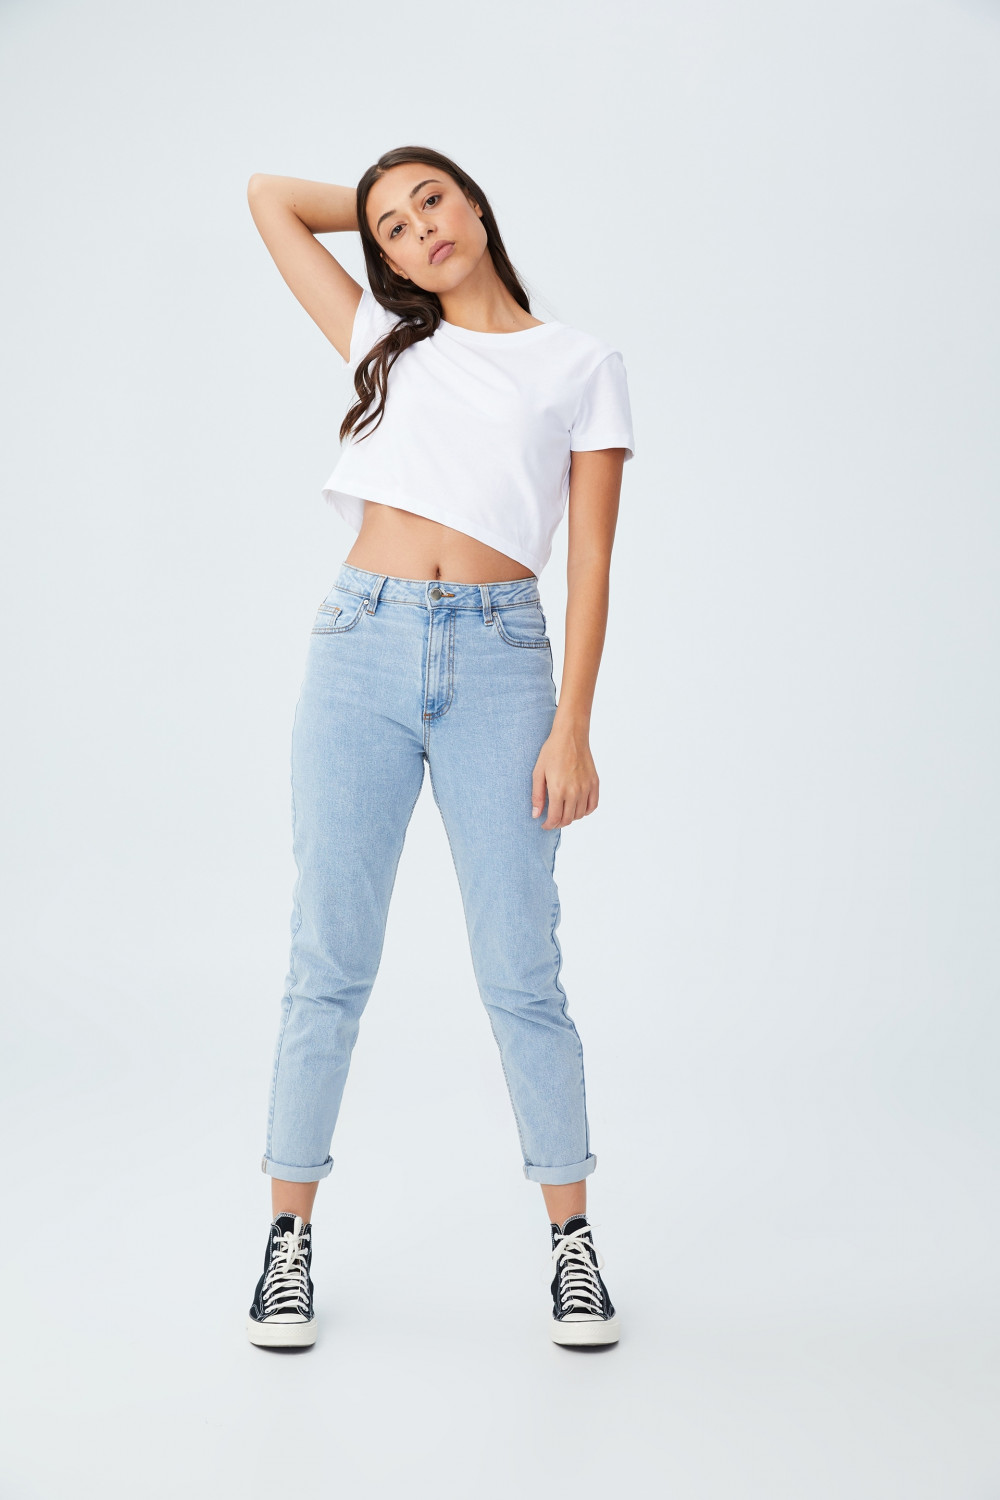 Muôn kiểu quần jeans được các siêu mẫu quốc tế sắm về tủ đồ-5